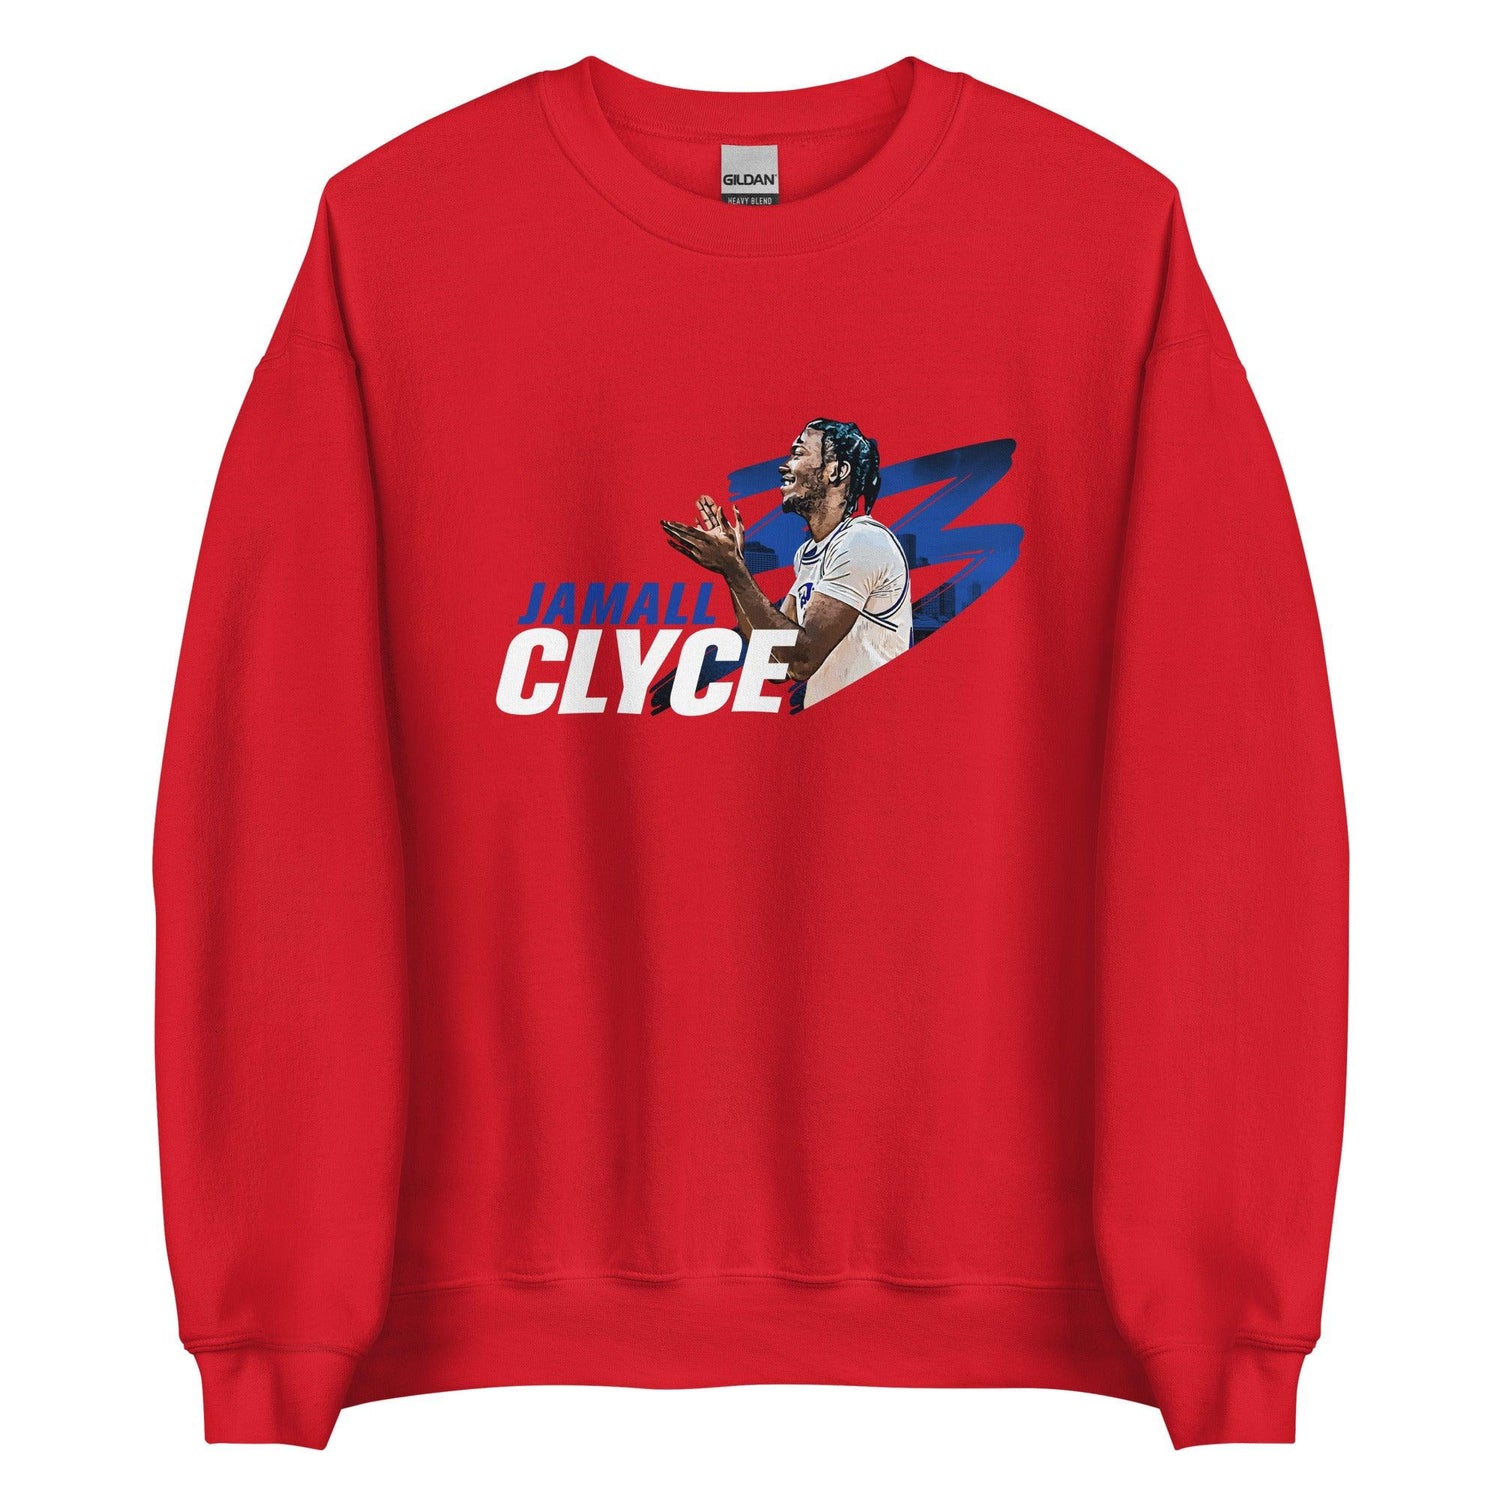 Jamall Clyce "Gameday" Sweatshirt - Fan Arch